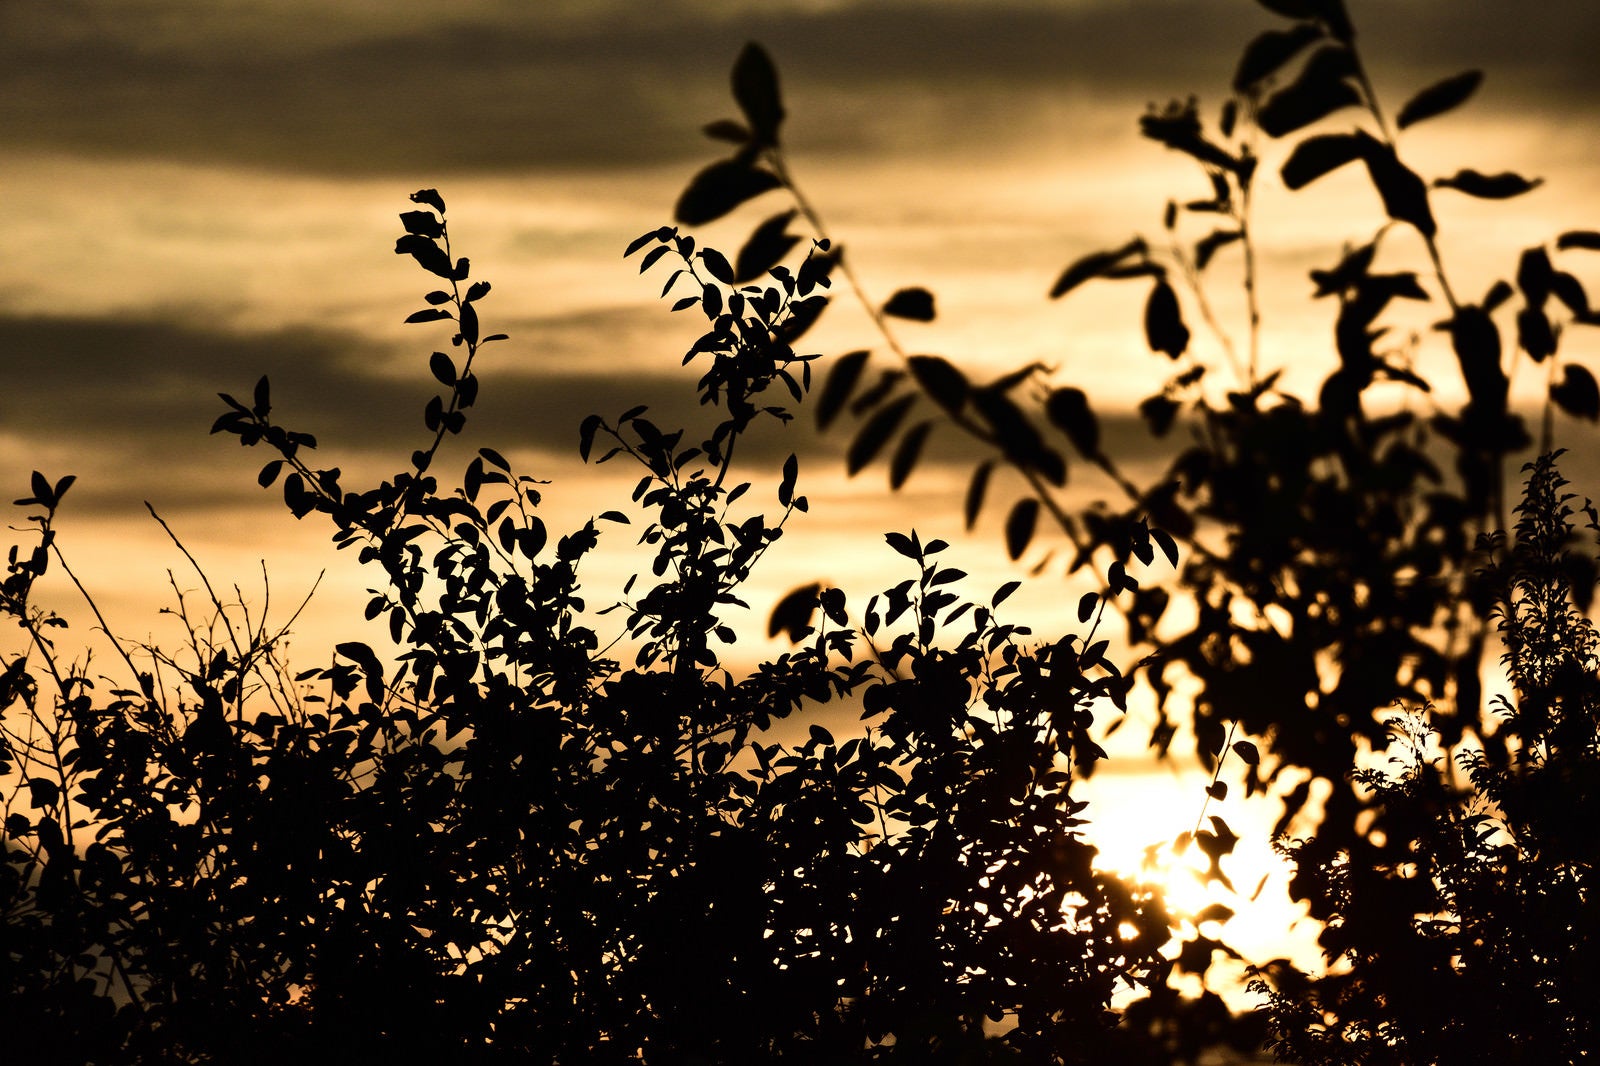 「黄金色に染まる夕日と木々のシルエット」の写真